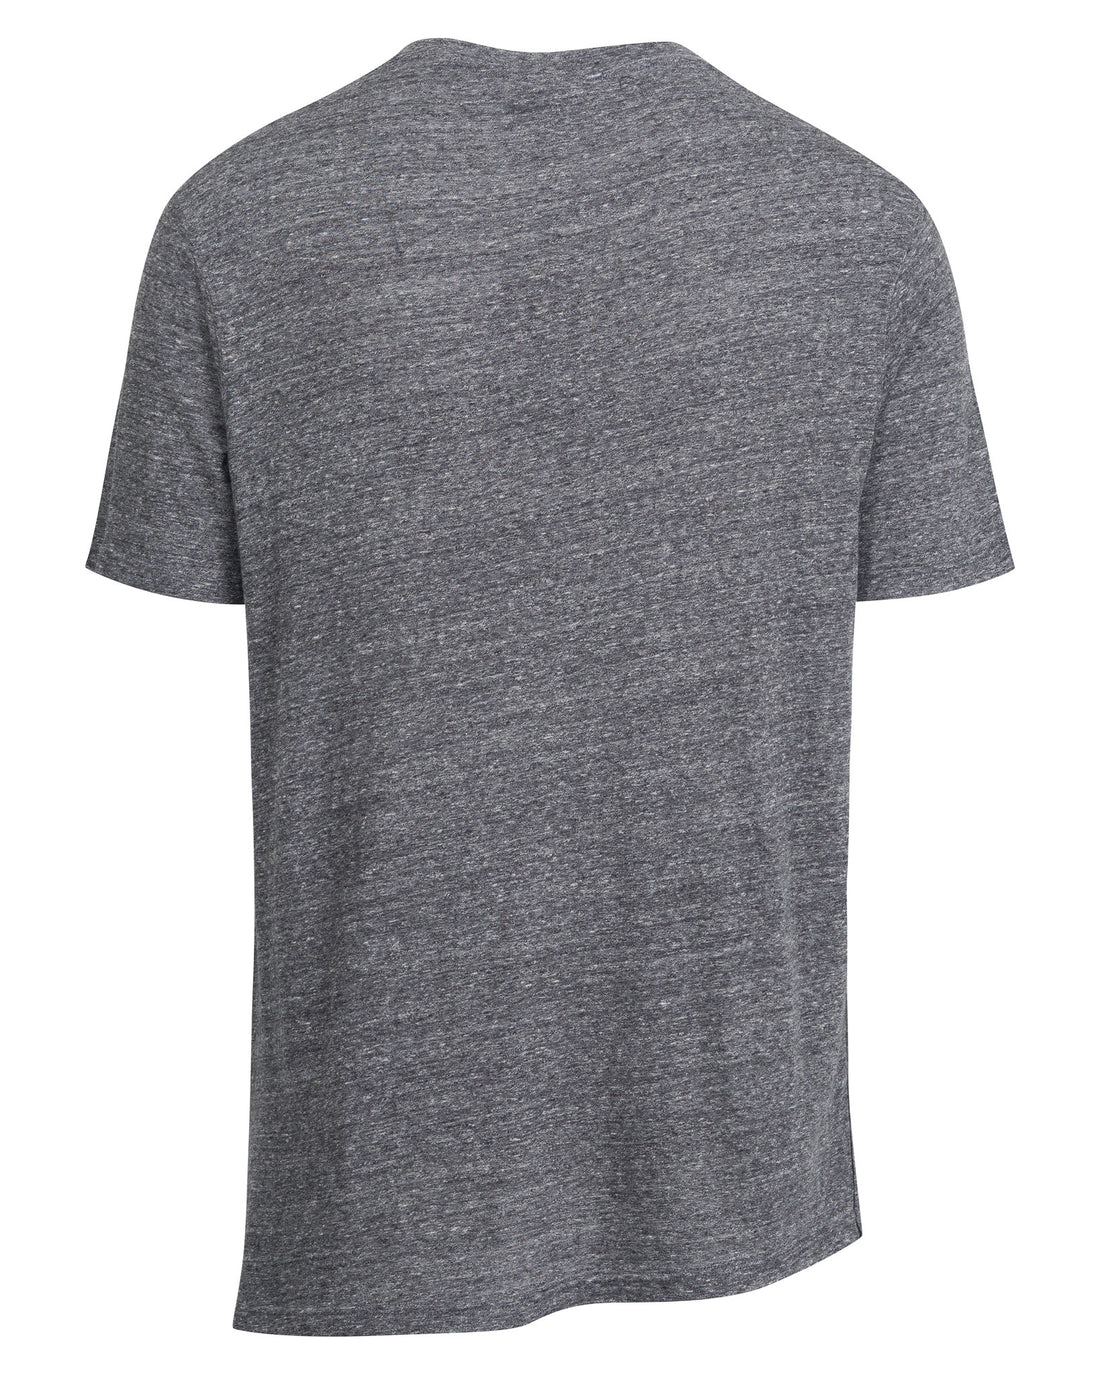 Walden Asymmetrical T-Shirt